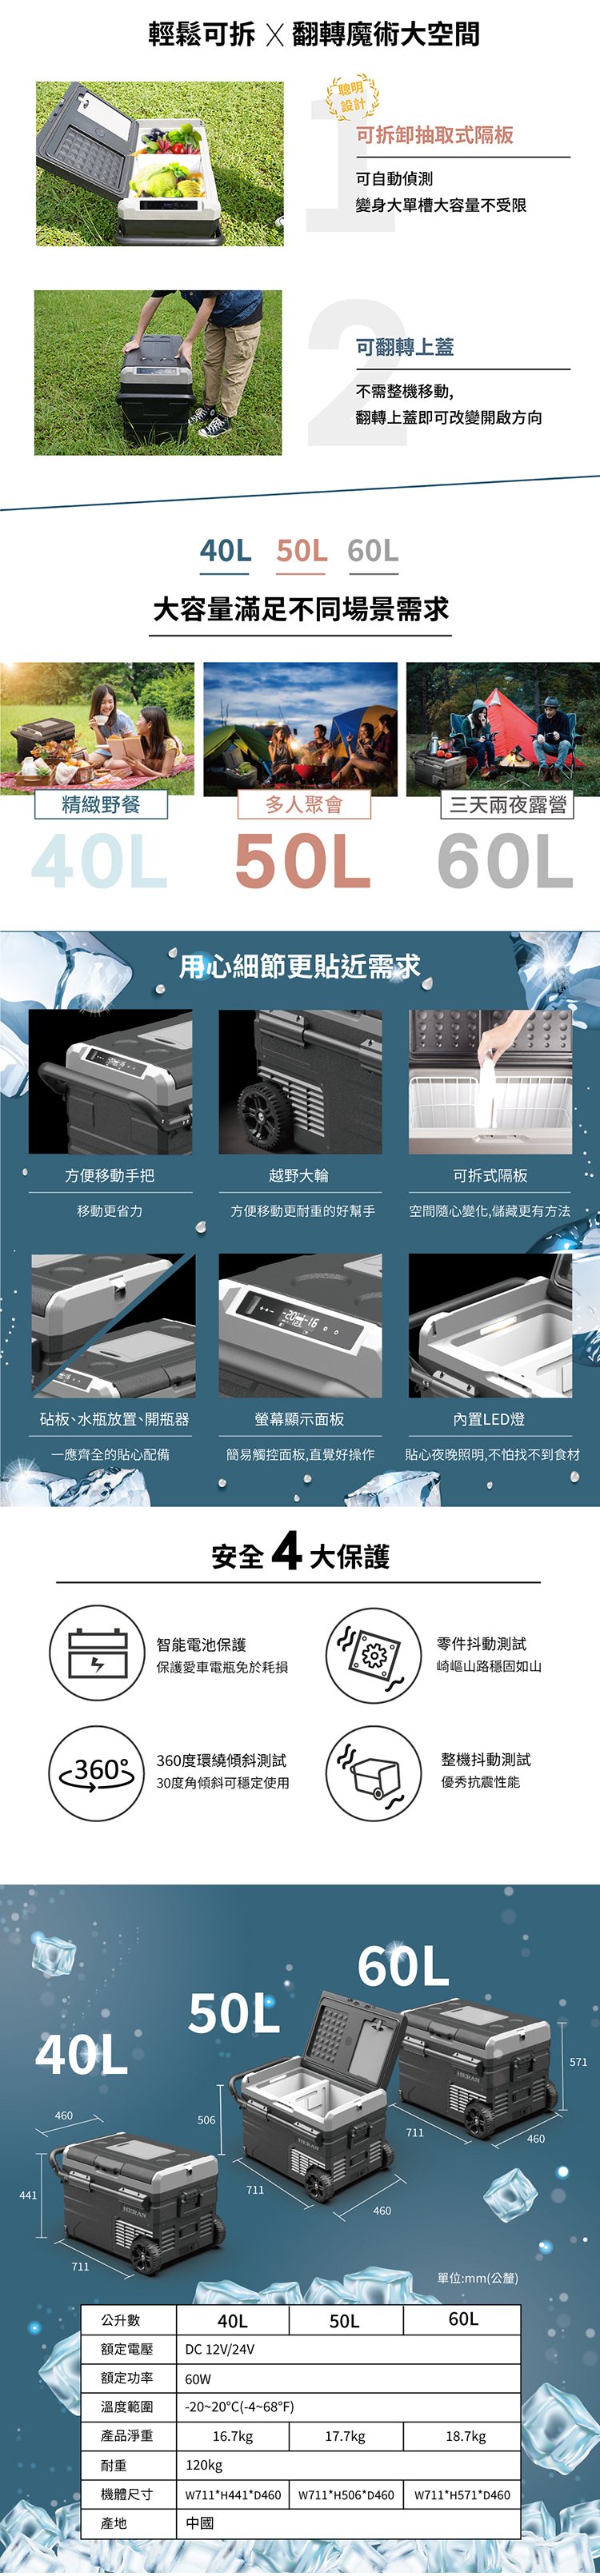 【有購豐】禾聯 HERAN 50L行動冰箱(HPR-450AP01S)